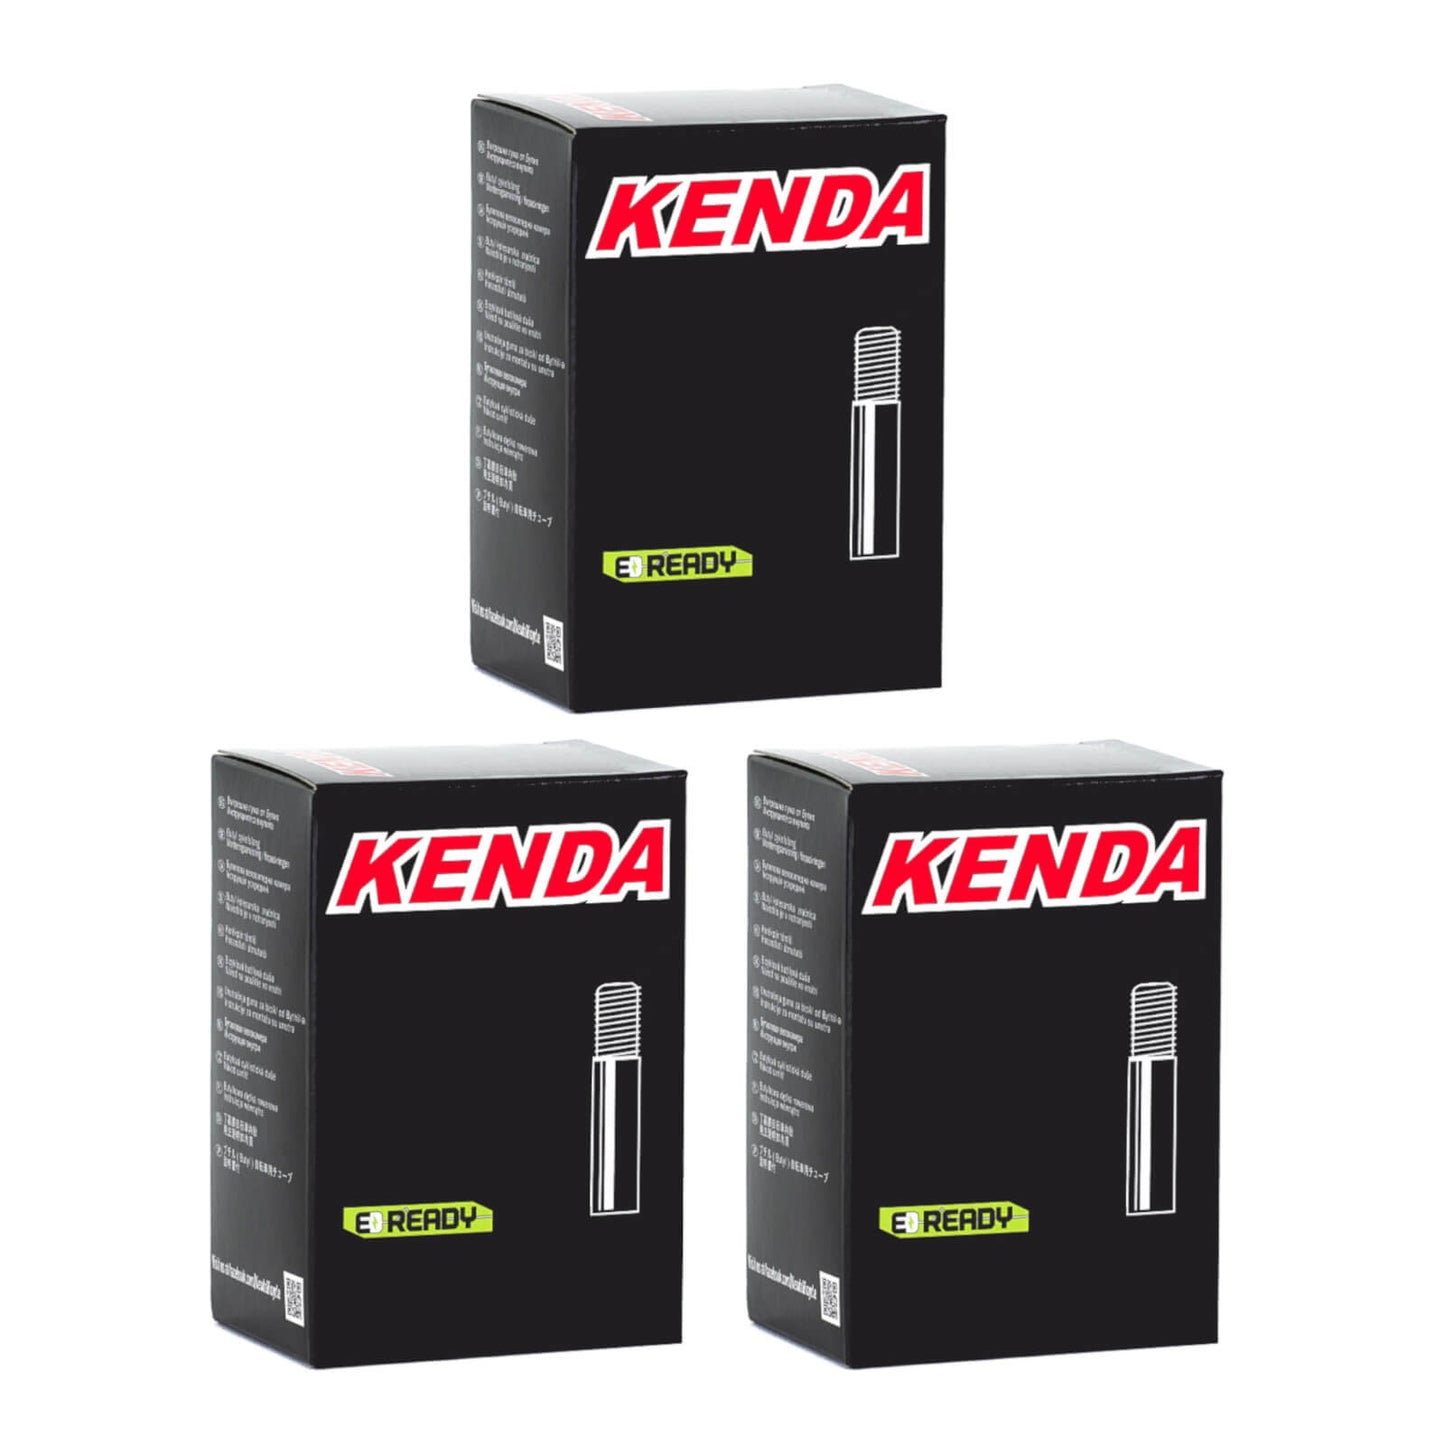 Kenda 27.5x2.0-2.4" 27.5 Inch Schrader Valve Bike Inner Tube Pack of 3